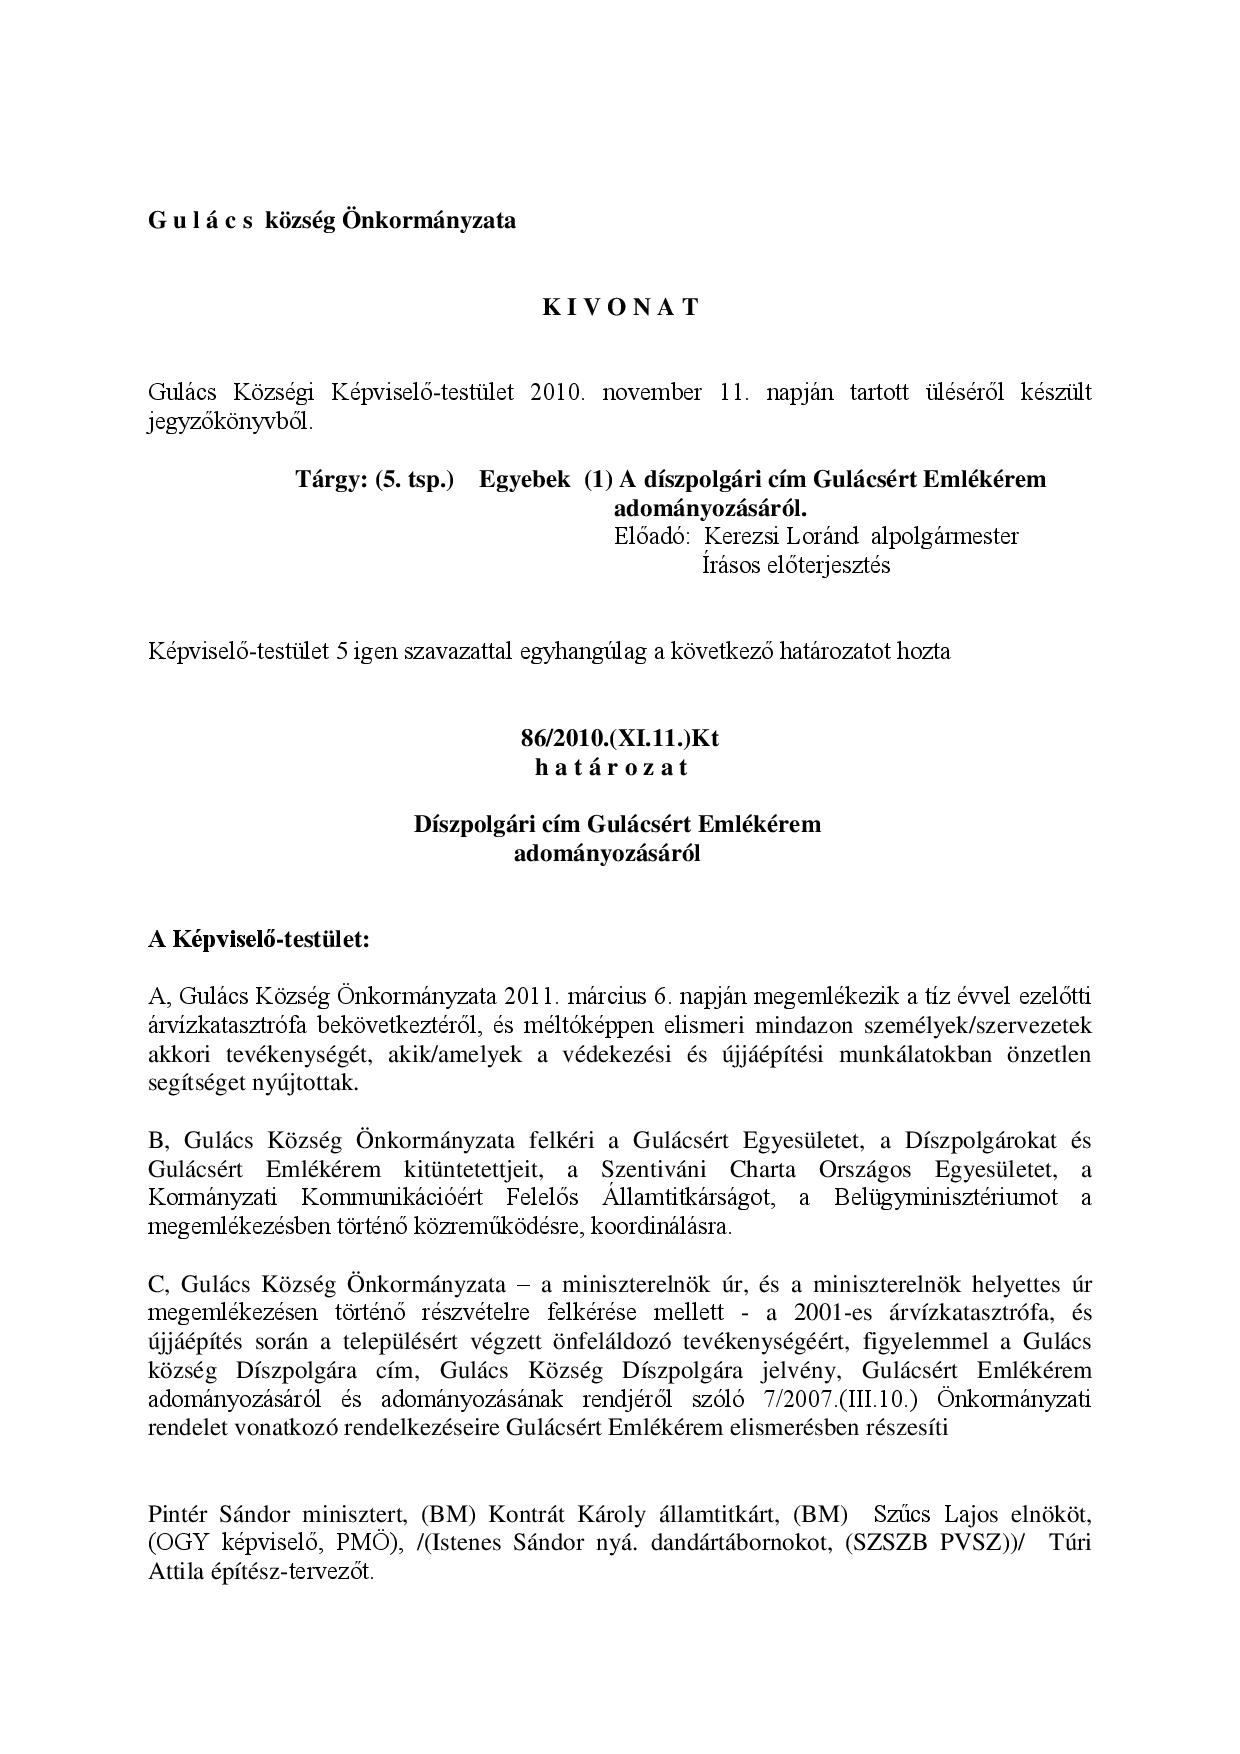 86 2010.XI.11. Gulács község díszpolgári cím 1 page 001